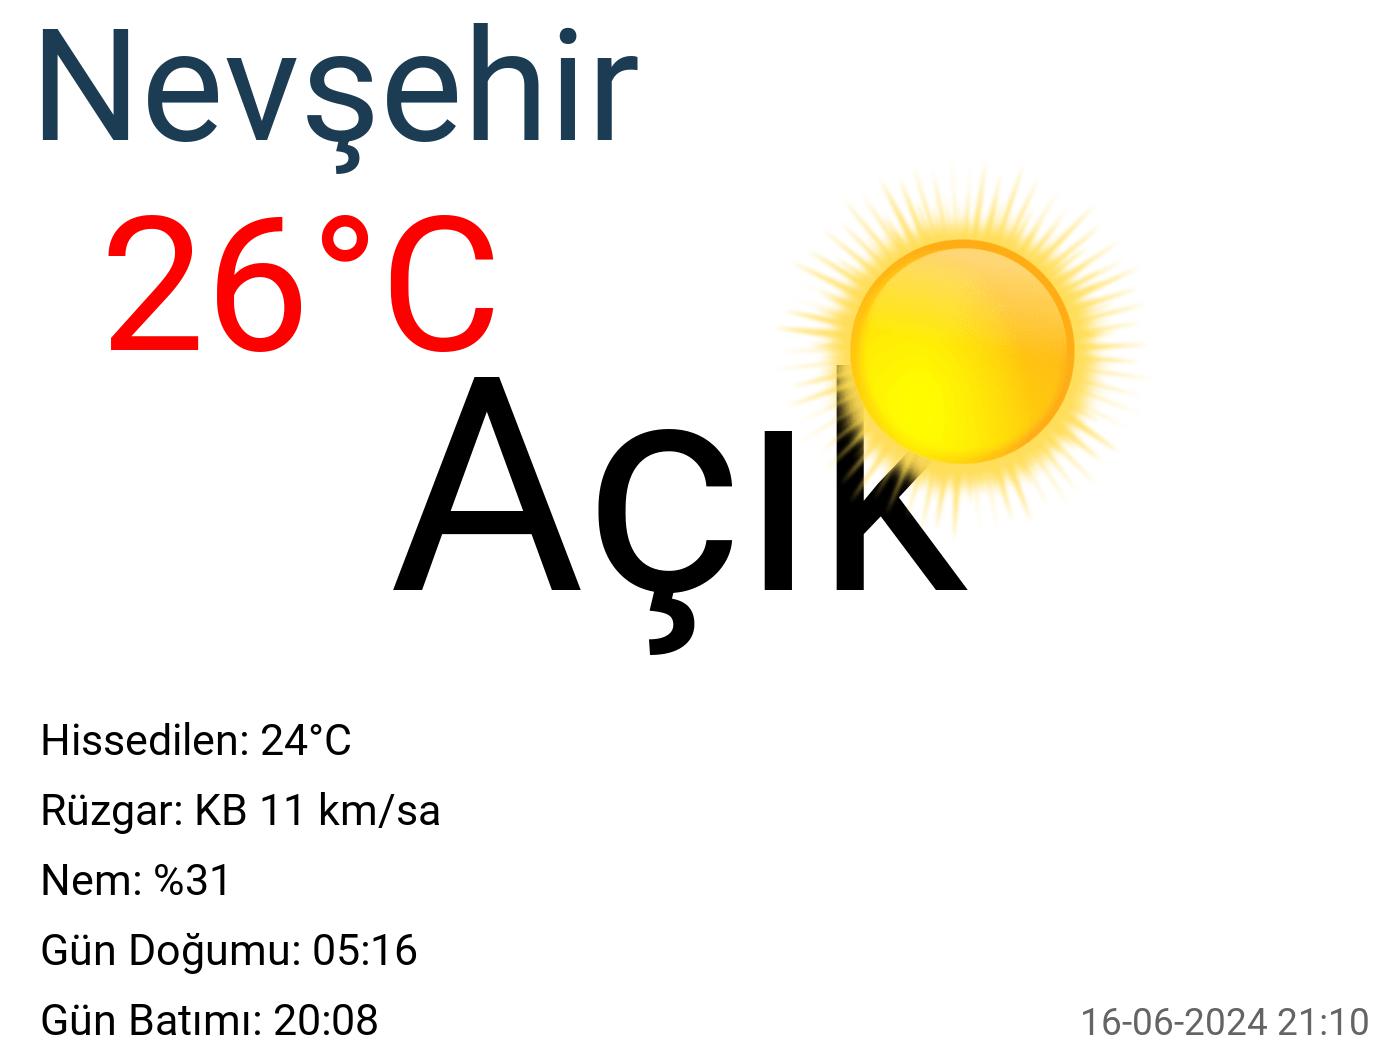 Nevşehir hava durumu 7 günlük